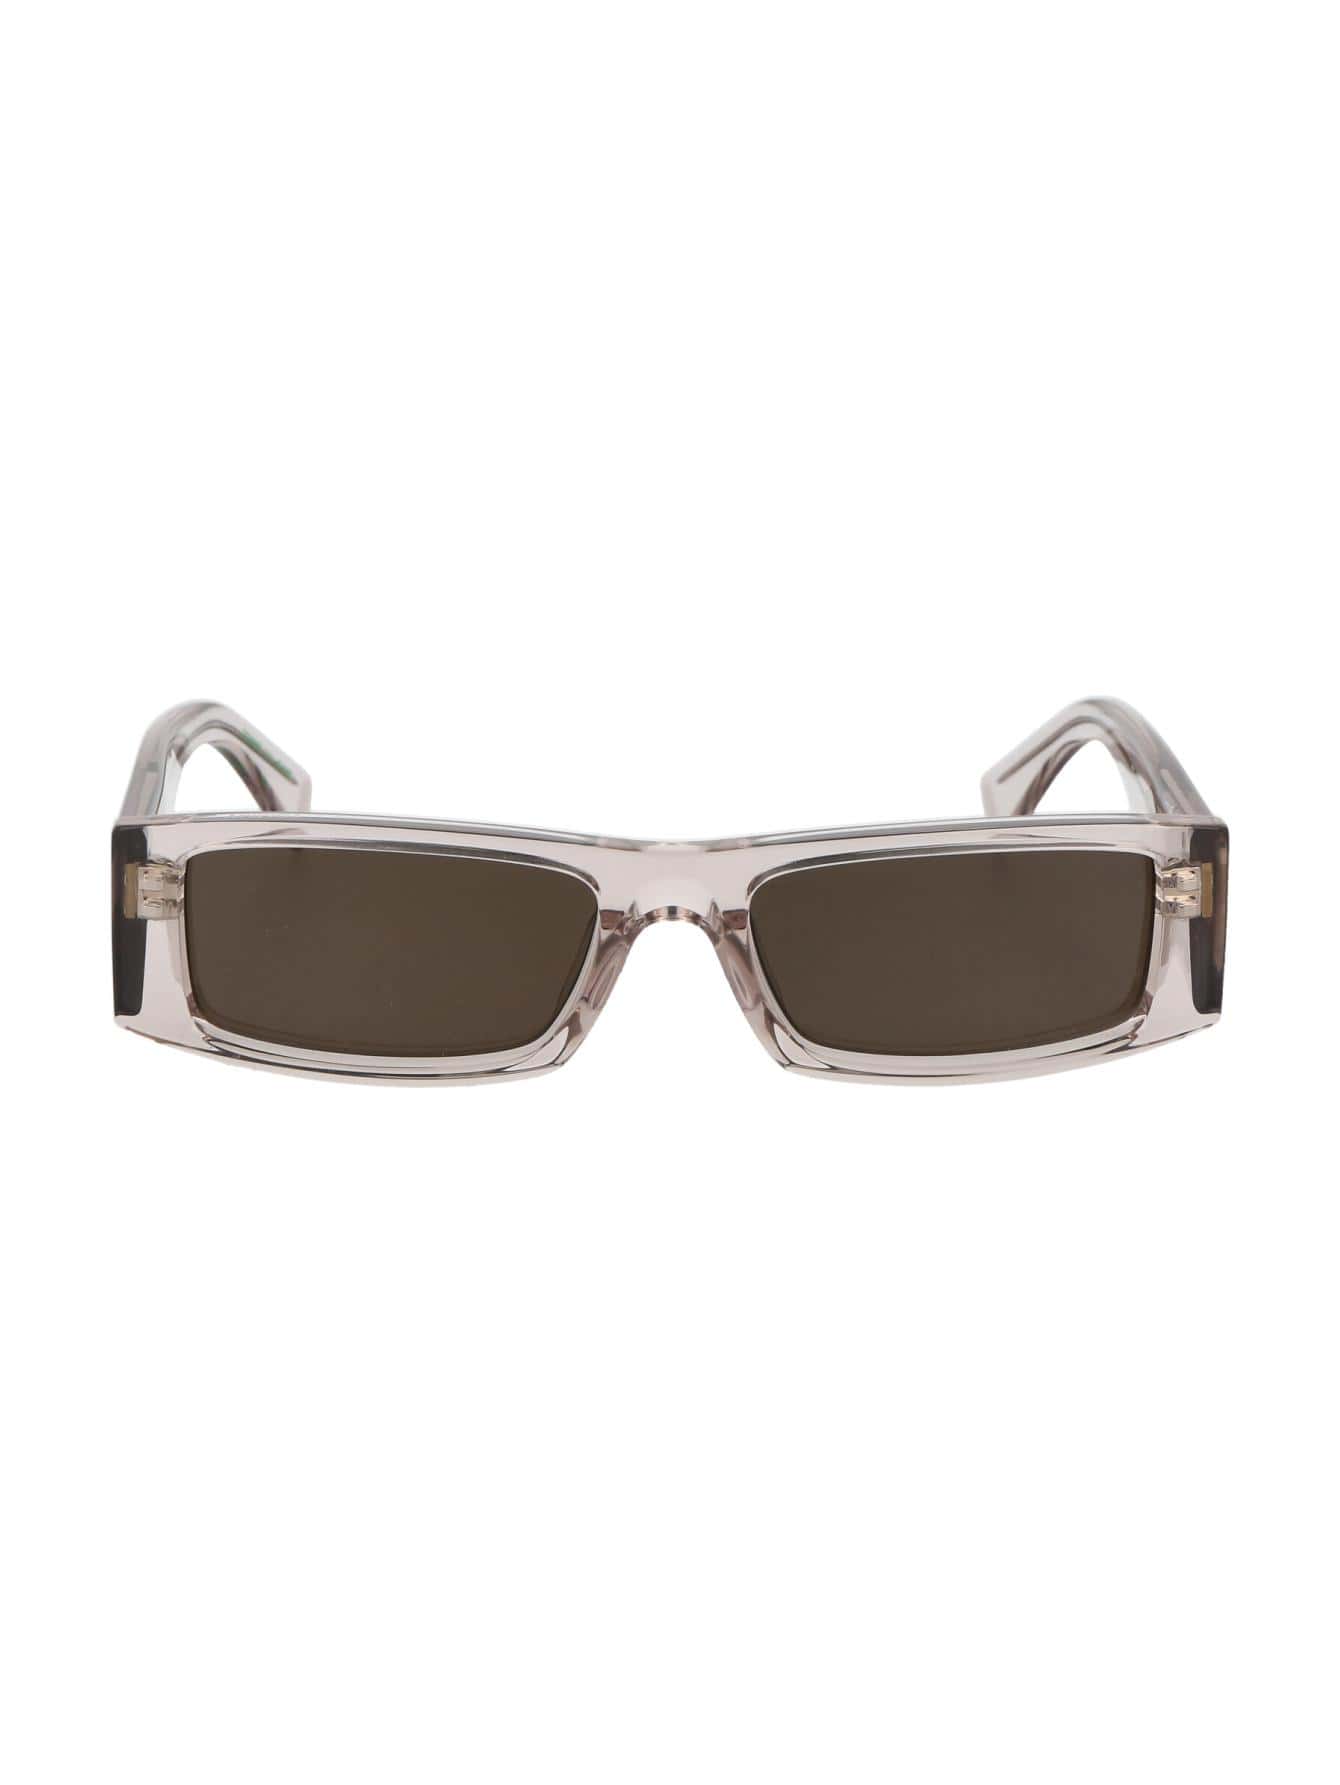 Мужские солнцезащитные очки Tommy Hilfiger DECOR TJ0092S10A70, многоцветный